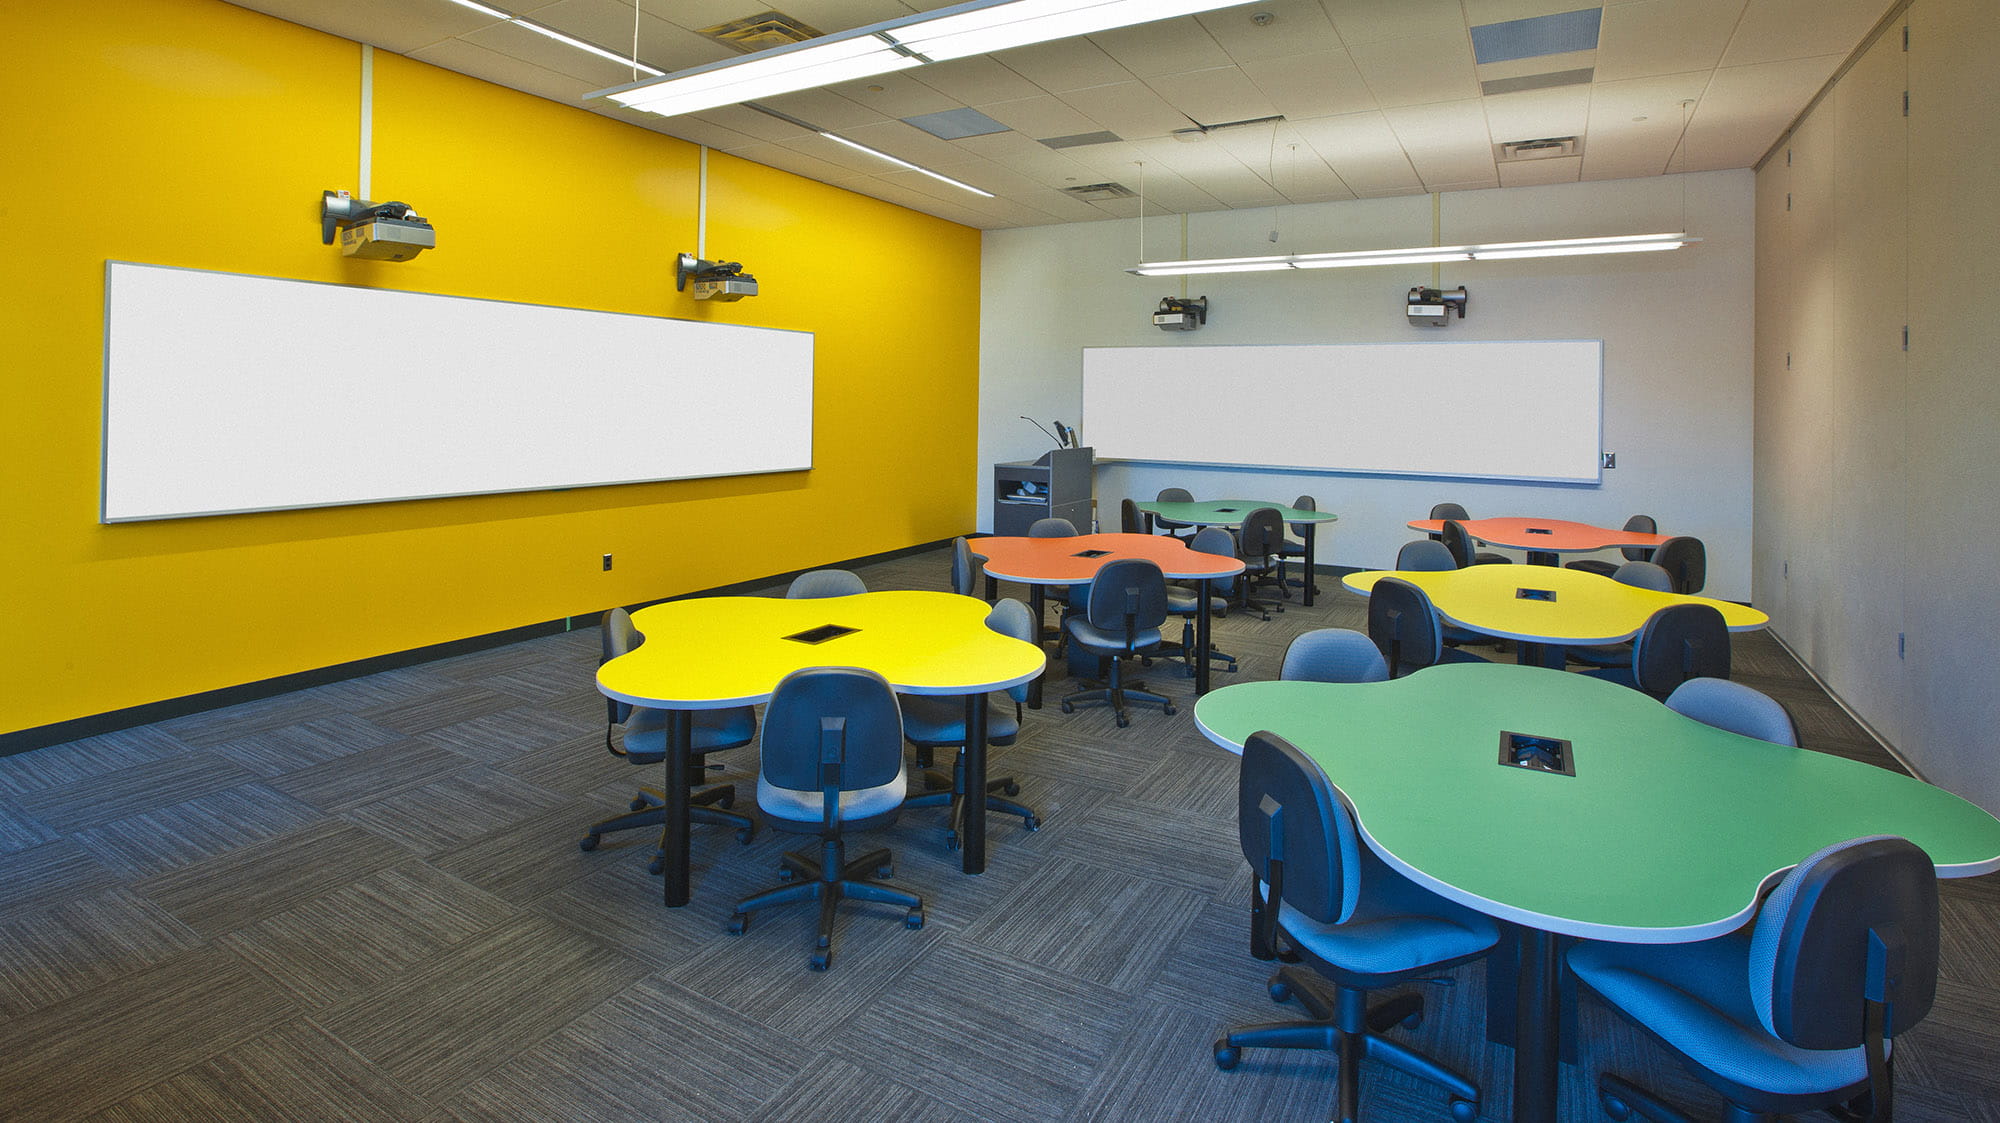 一间黄色墙壁的教室，摆满了五颜六色的变形虫形状的桌子。